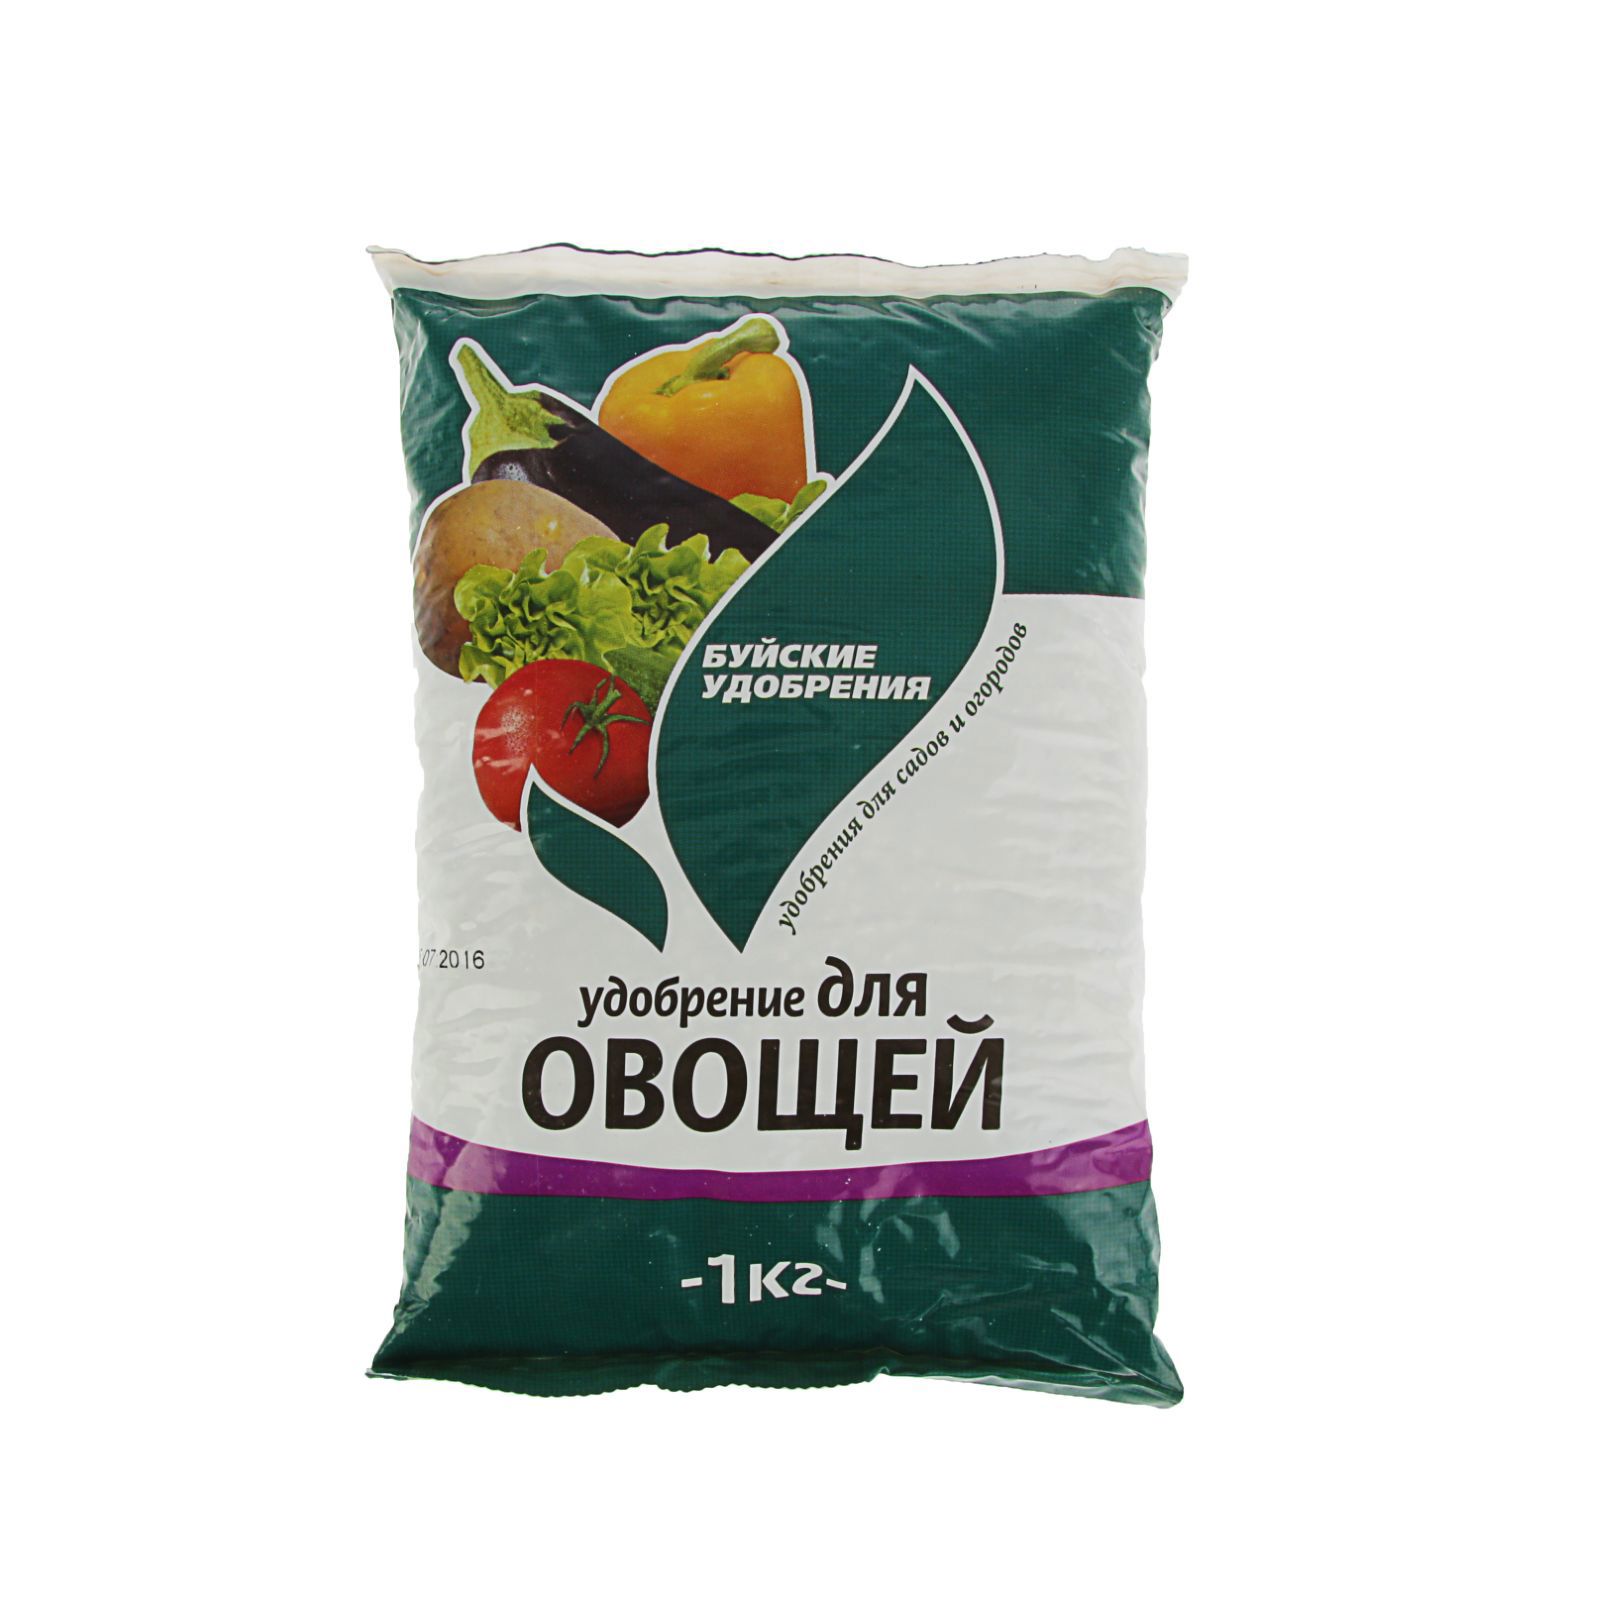 91032114 Удобрение минеральное для овощей 1 кг STLM-0449977 БУЙСКИЕ УДОБРЕНИЯ